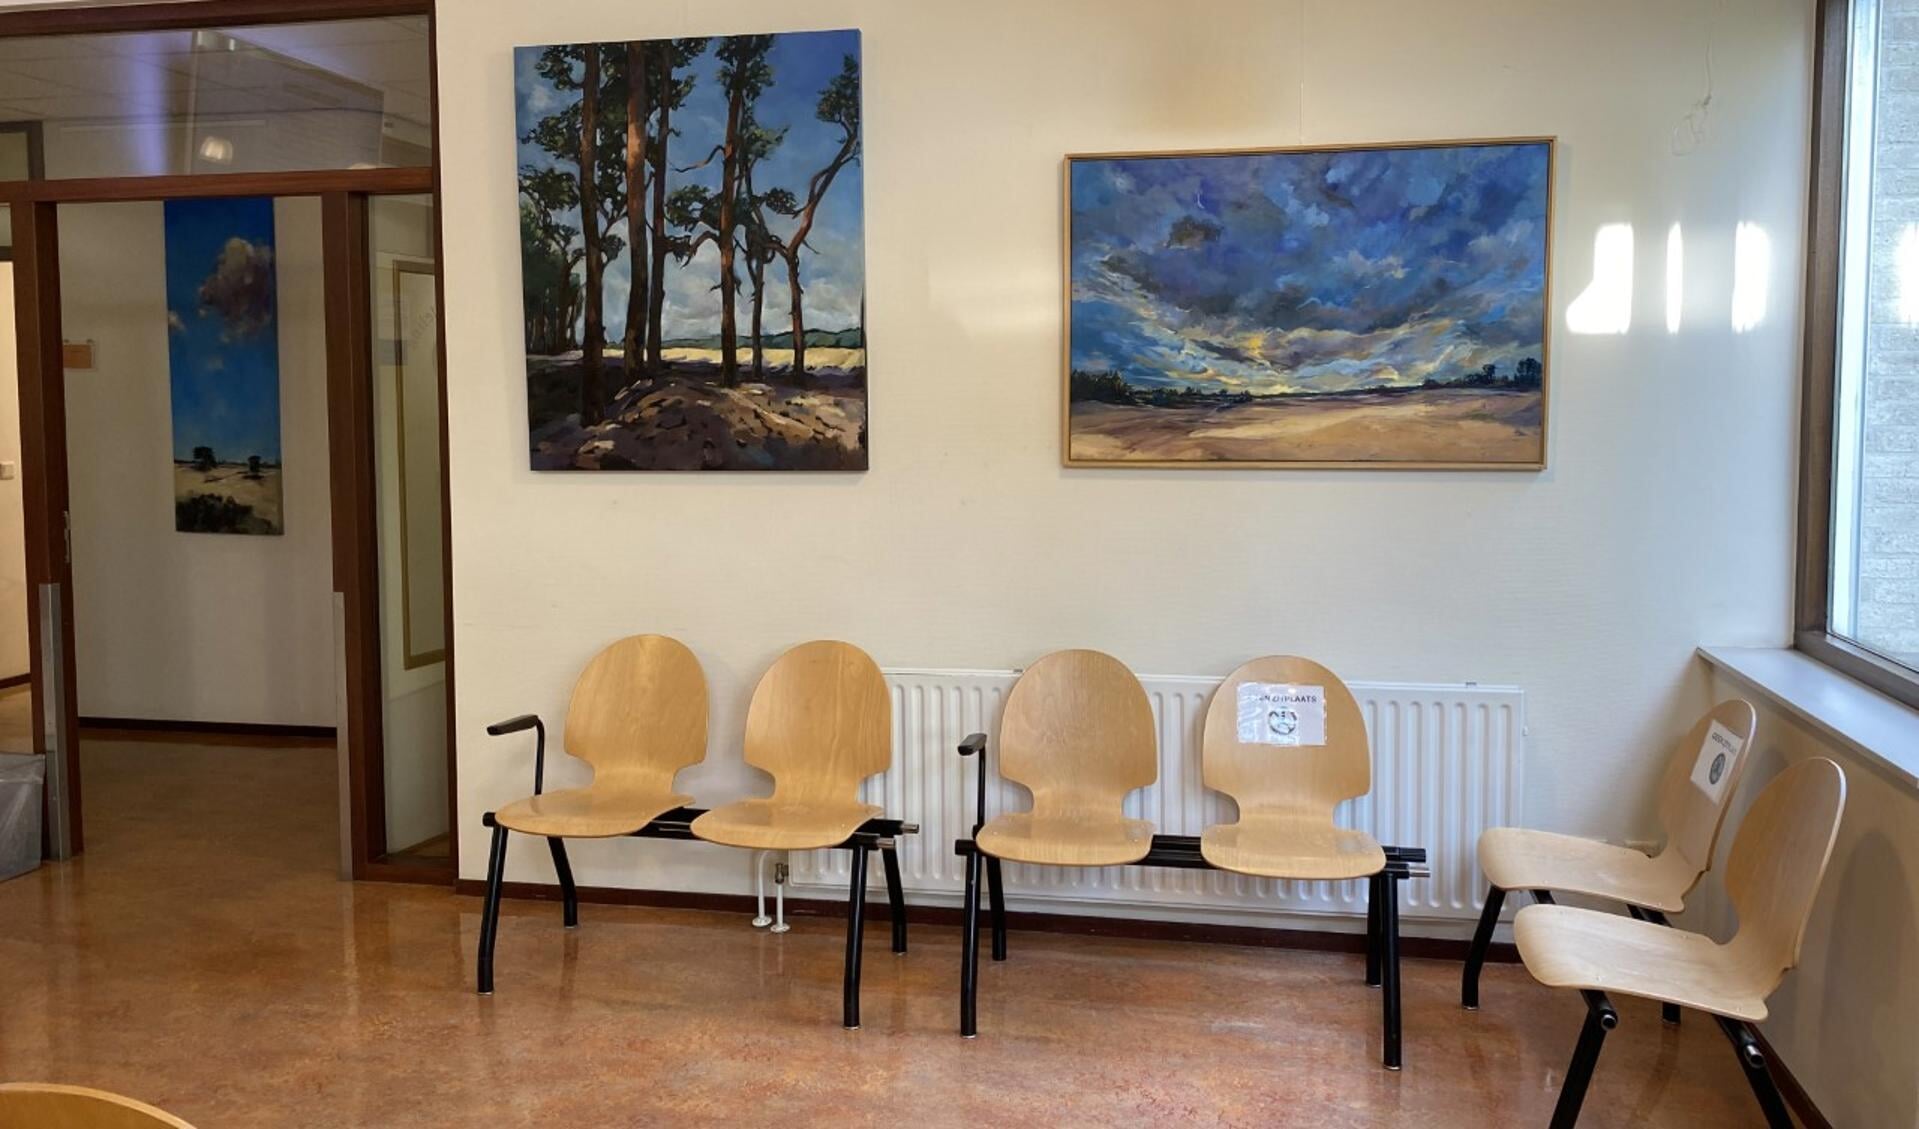 De wachtkamer met enkele schilderijen van Karin Alberts.